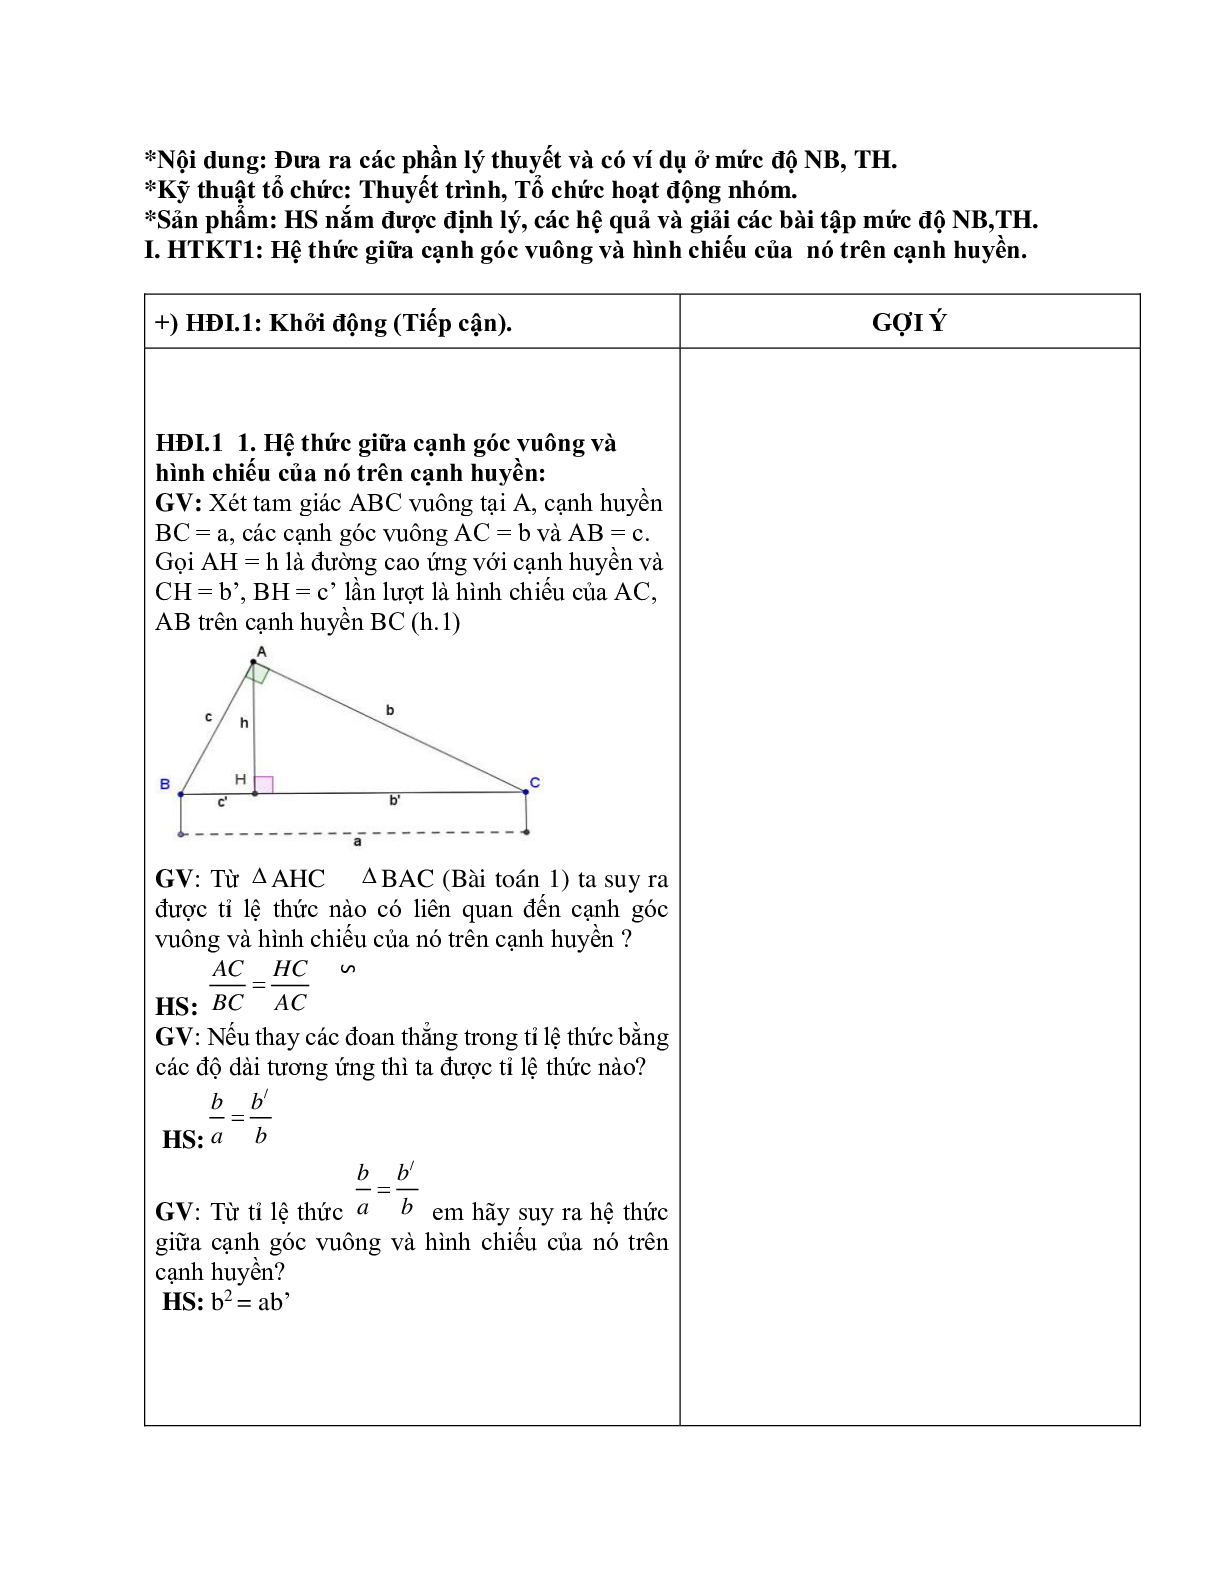 Giáo án Hình học 9 chương 1 bài 1: Hệ thức giữa cạnh và đường cao trong tam giác vuông mới nhất (trang 4)